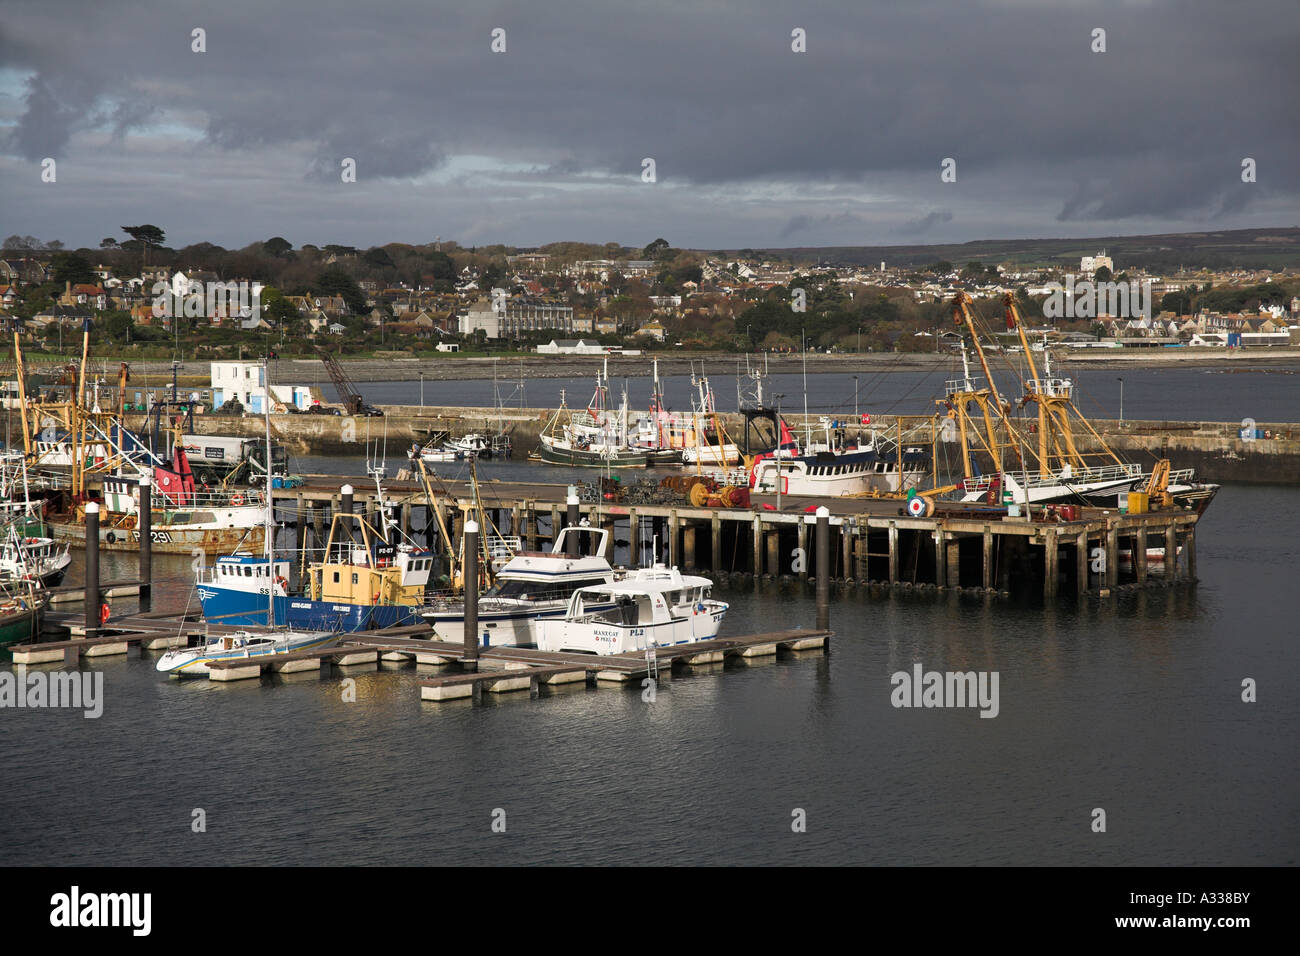 Le port de Newlyn Cornwall UK quais du port port de pêche QUAI Quai de poisson chalutiers bateaux Banque D'Images